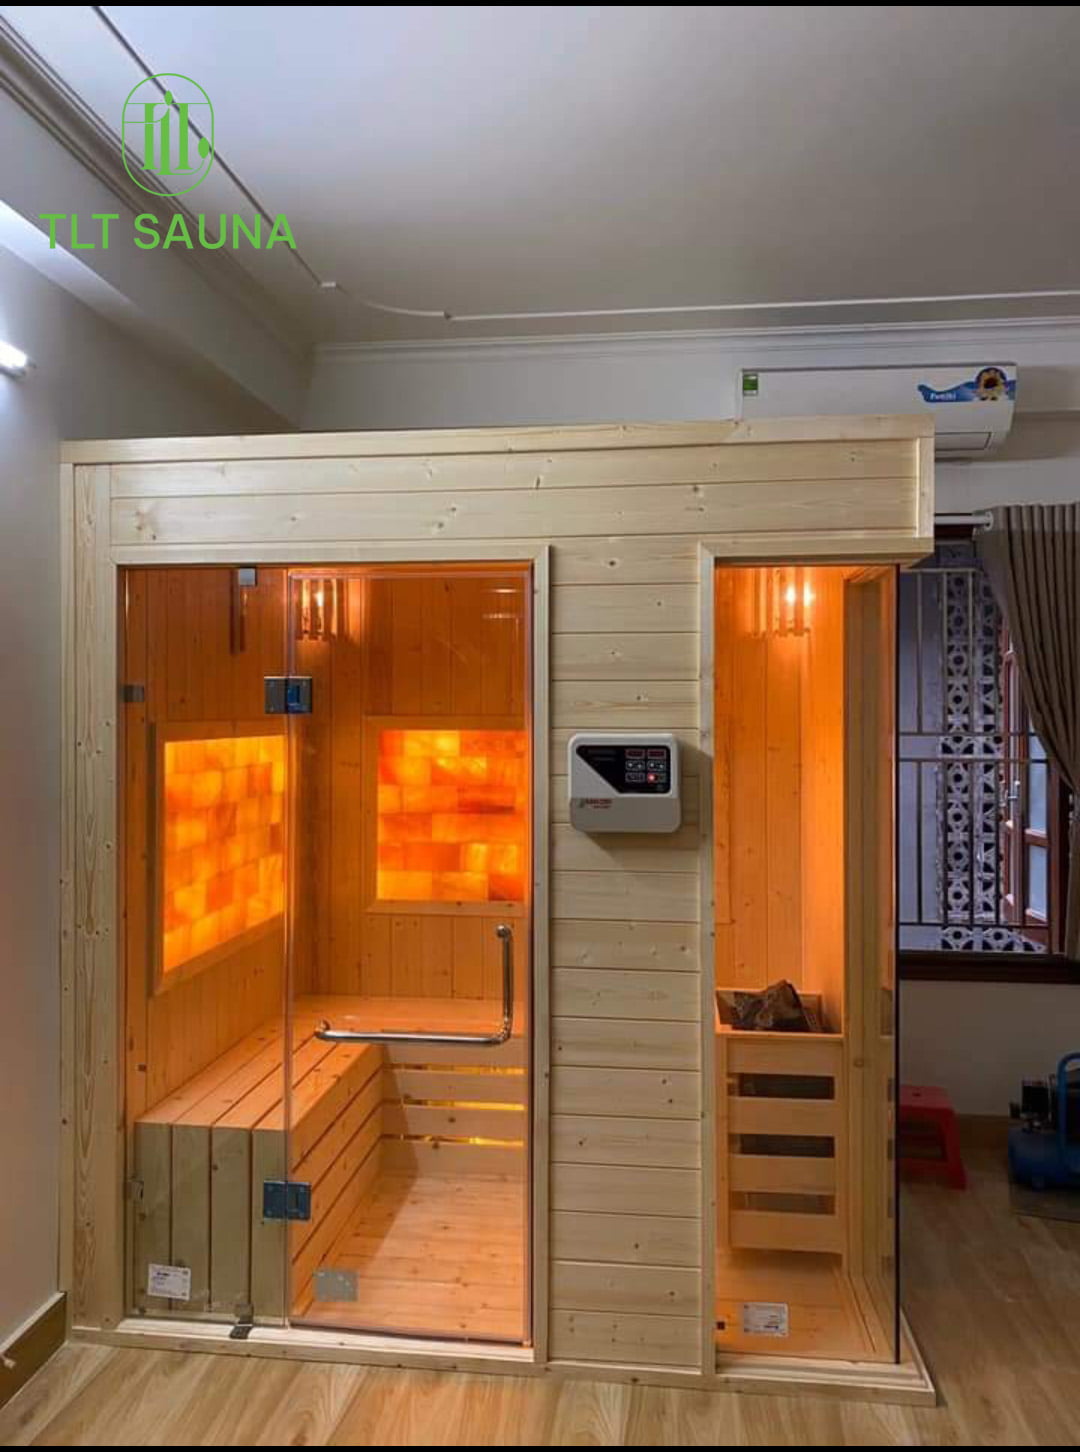 Phòng xông hơi TLT Sauna sử dụng công nghệ hiện đại nhất để tạo ra môi trường thoải mái và an toàn 